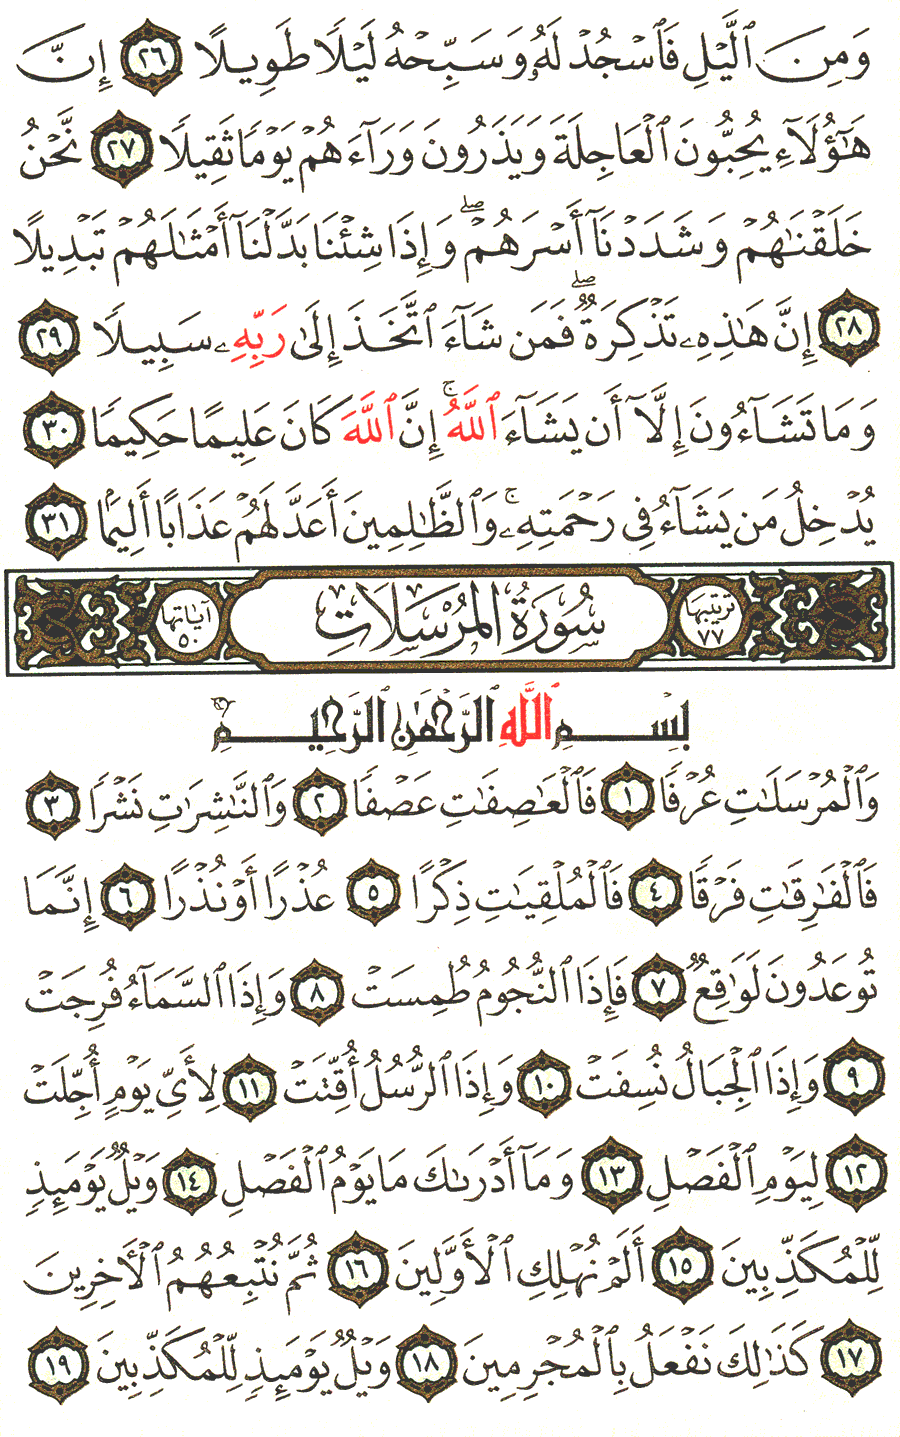 الصفحة رقم 580 من القرآن الكريم مكتوبة من المصحف